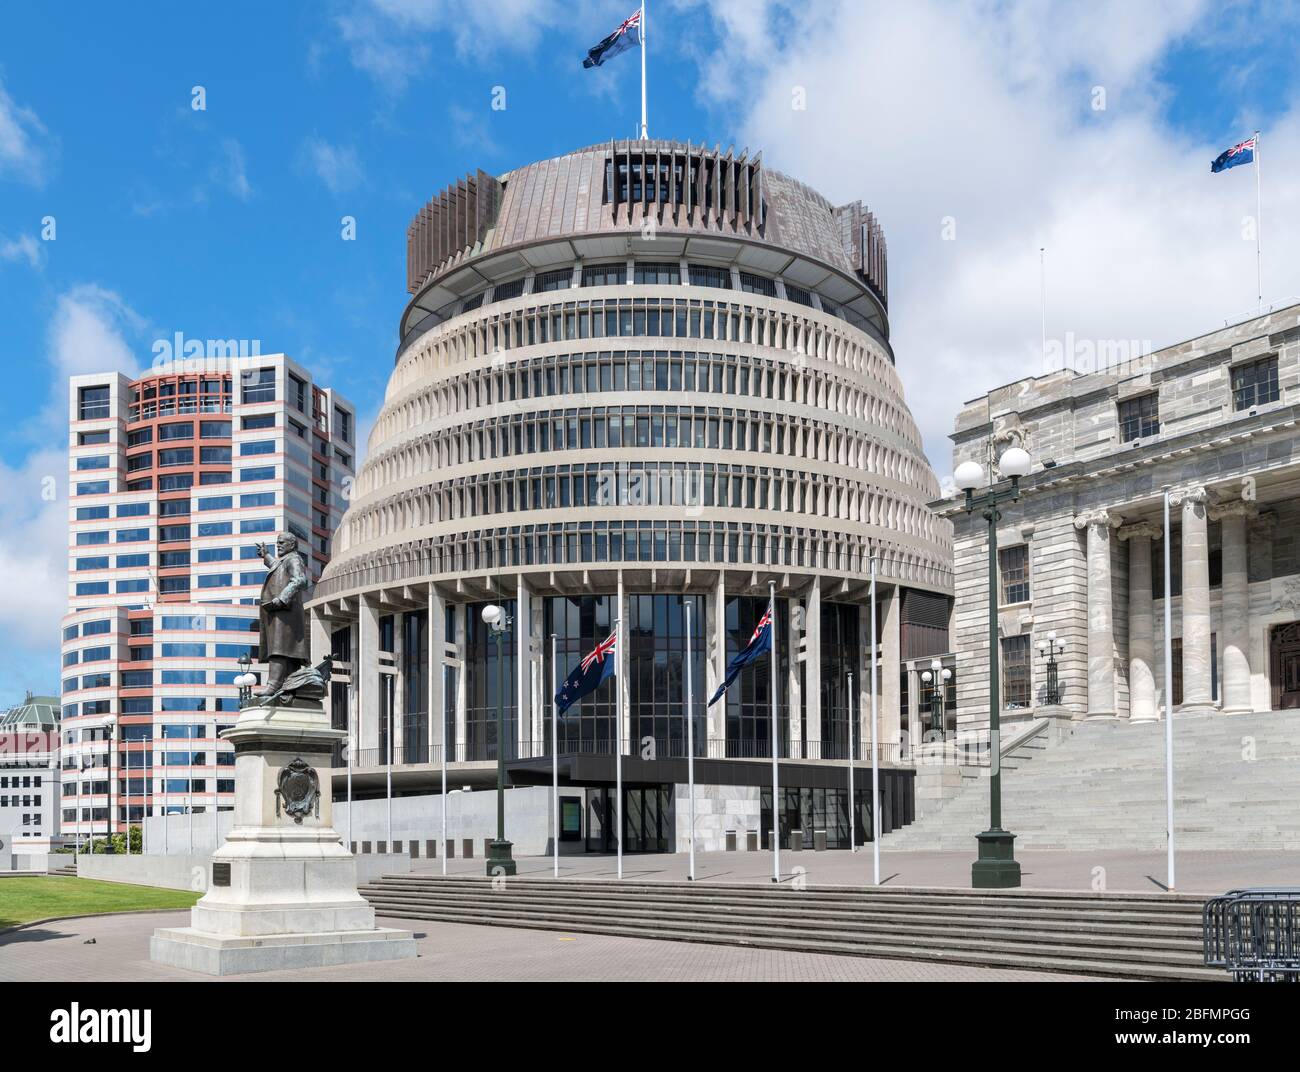 The Beehive, parte de los edificios del Parlamento de Nueva Zelanda, con la Cámara del Parlamento a la derecha y la Casa Bowen a la izquierda, Wellington, Nueva Zelanda Foto de stock